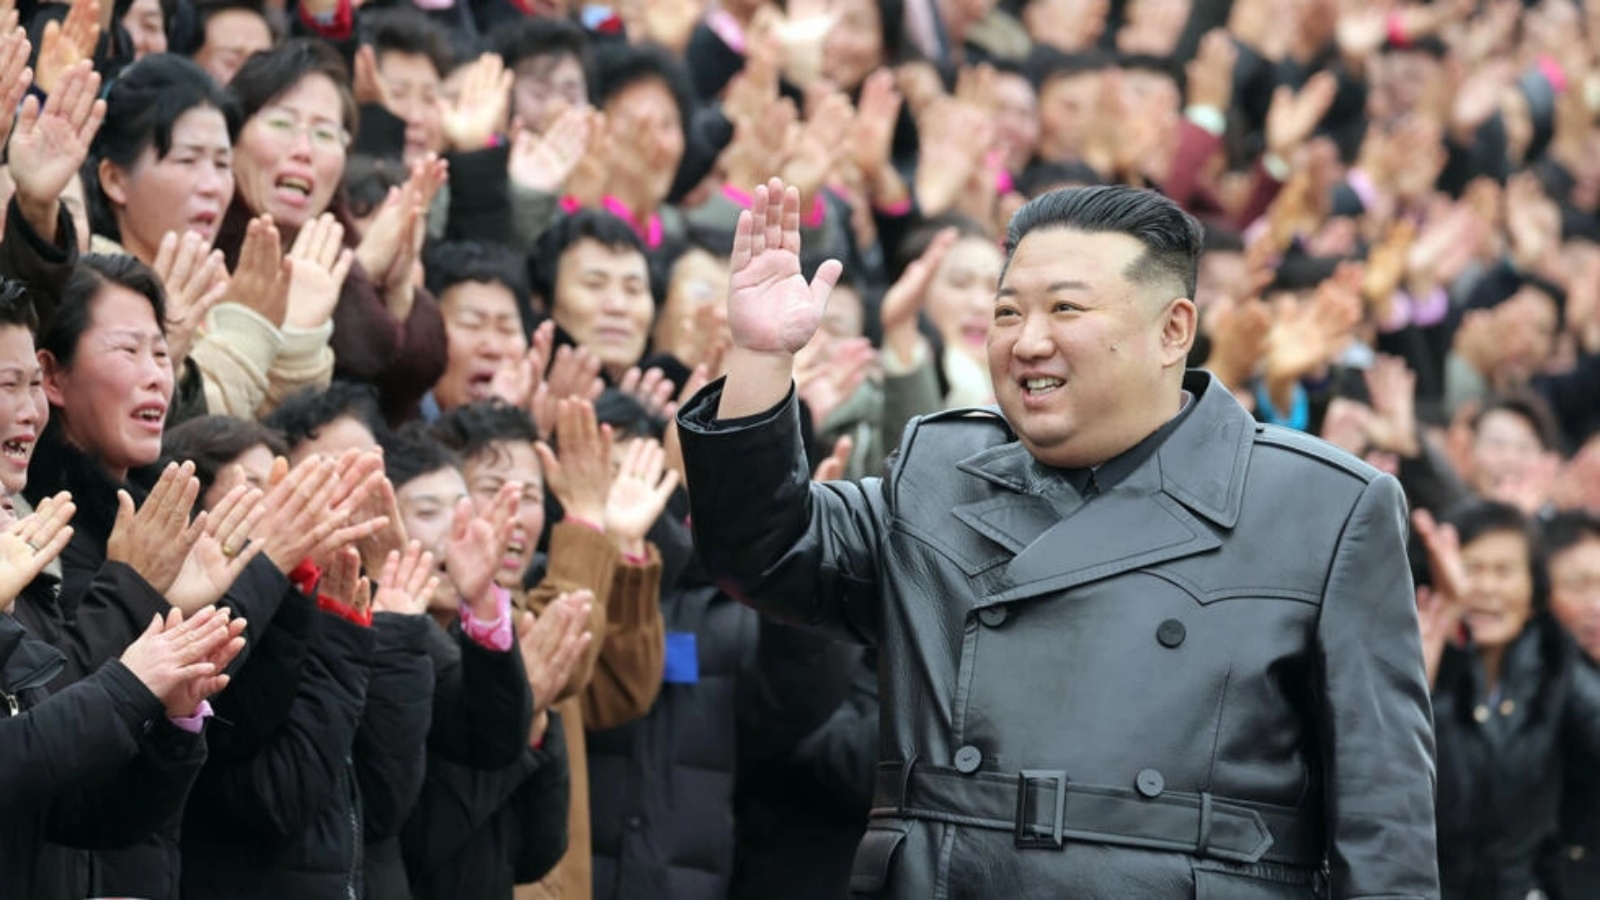 وجاء إطلاق كوريا الشمالية الصاروخي في الوقت الذي تحتفل فيه البلاد بالذكرى السنوية لوالد الزعيم كيم جونغ أون وسلفه كيم جونغ إيل.